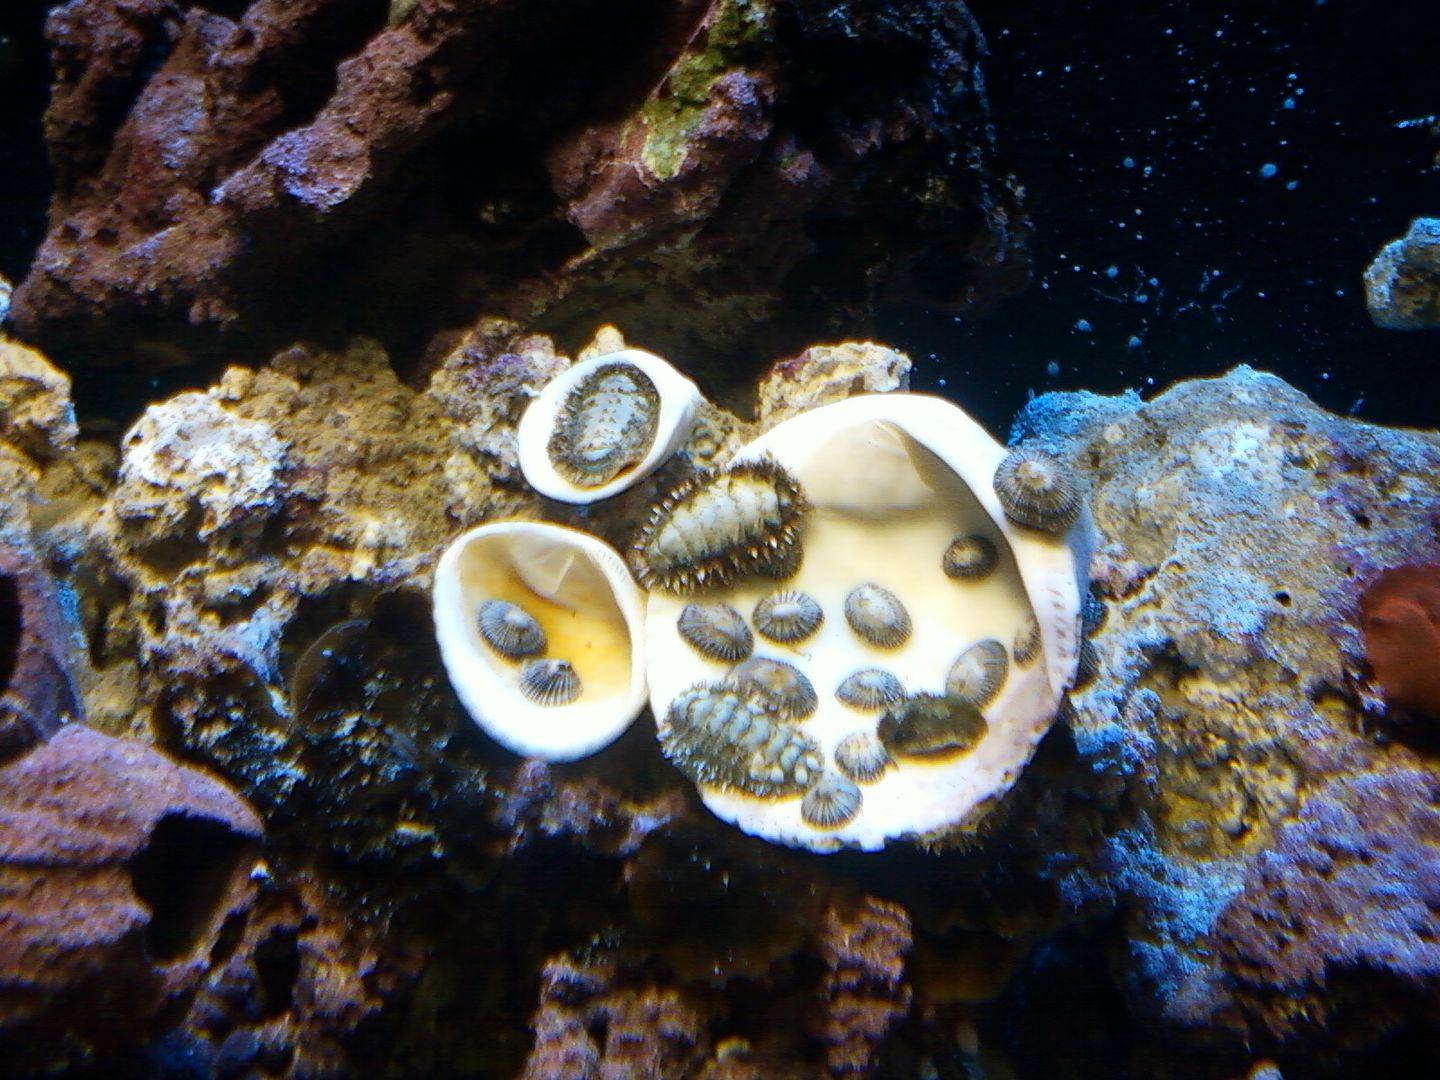 Aquarium_ReefCleaners2_16MAY2012.jpg